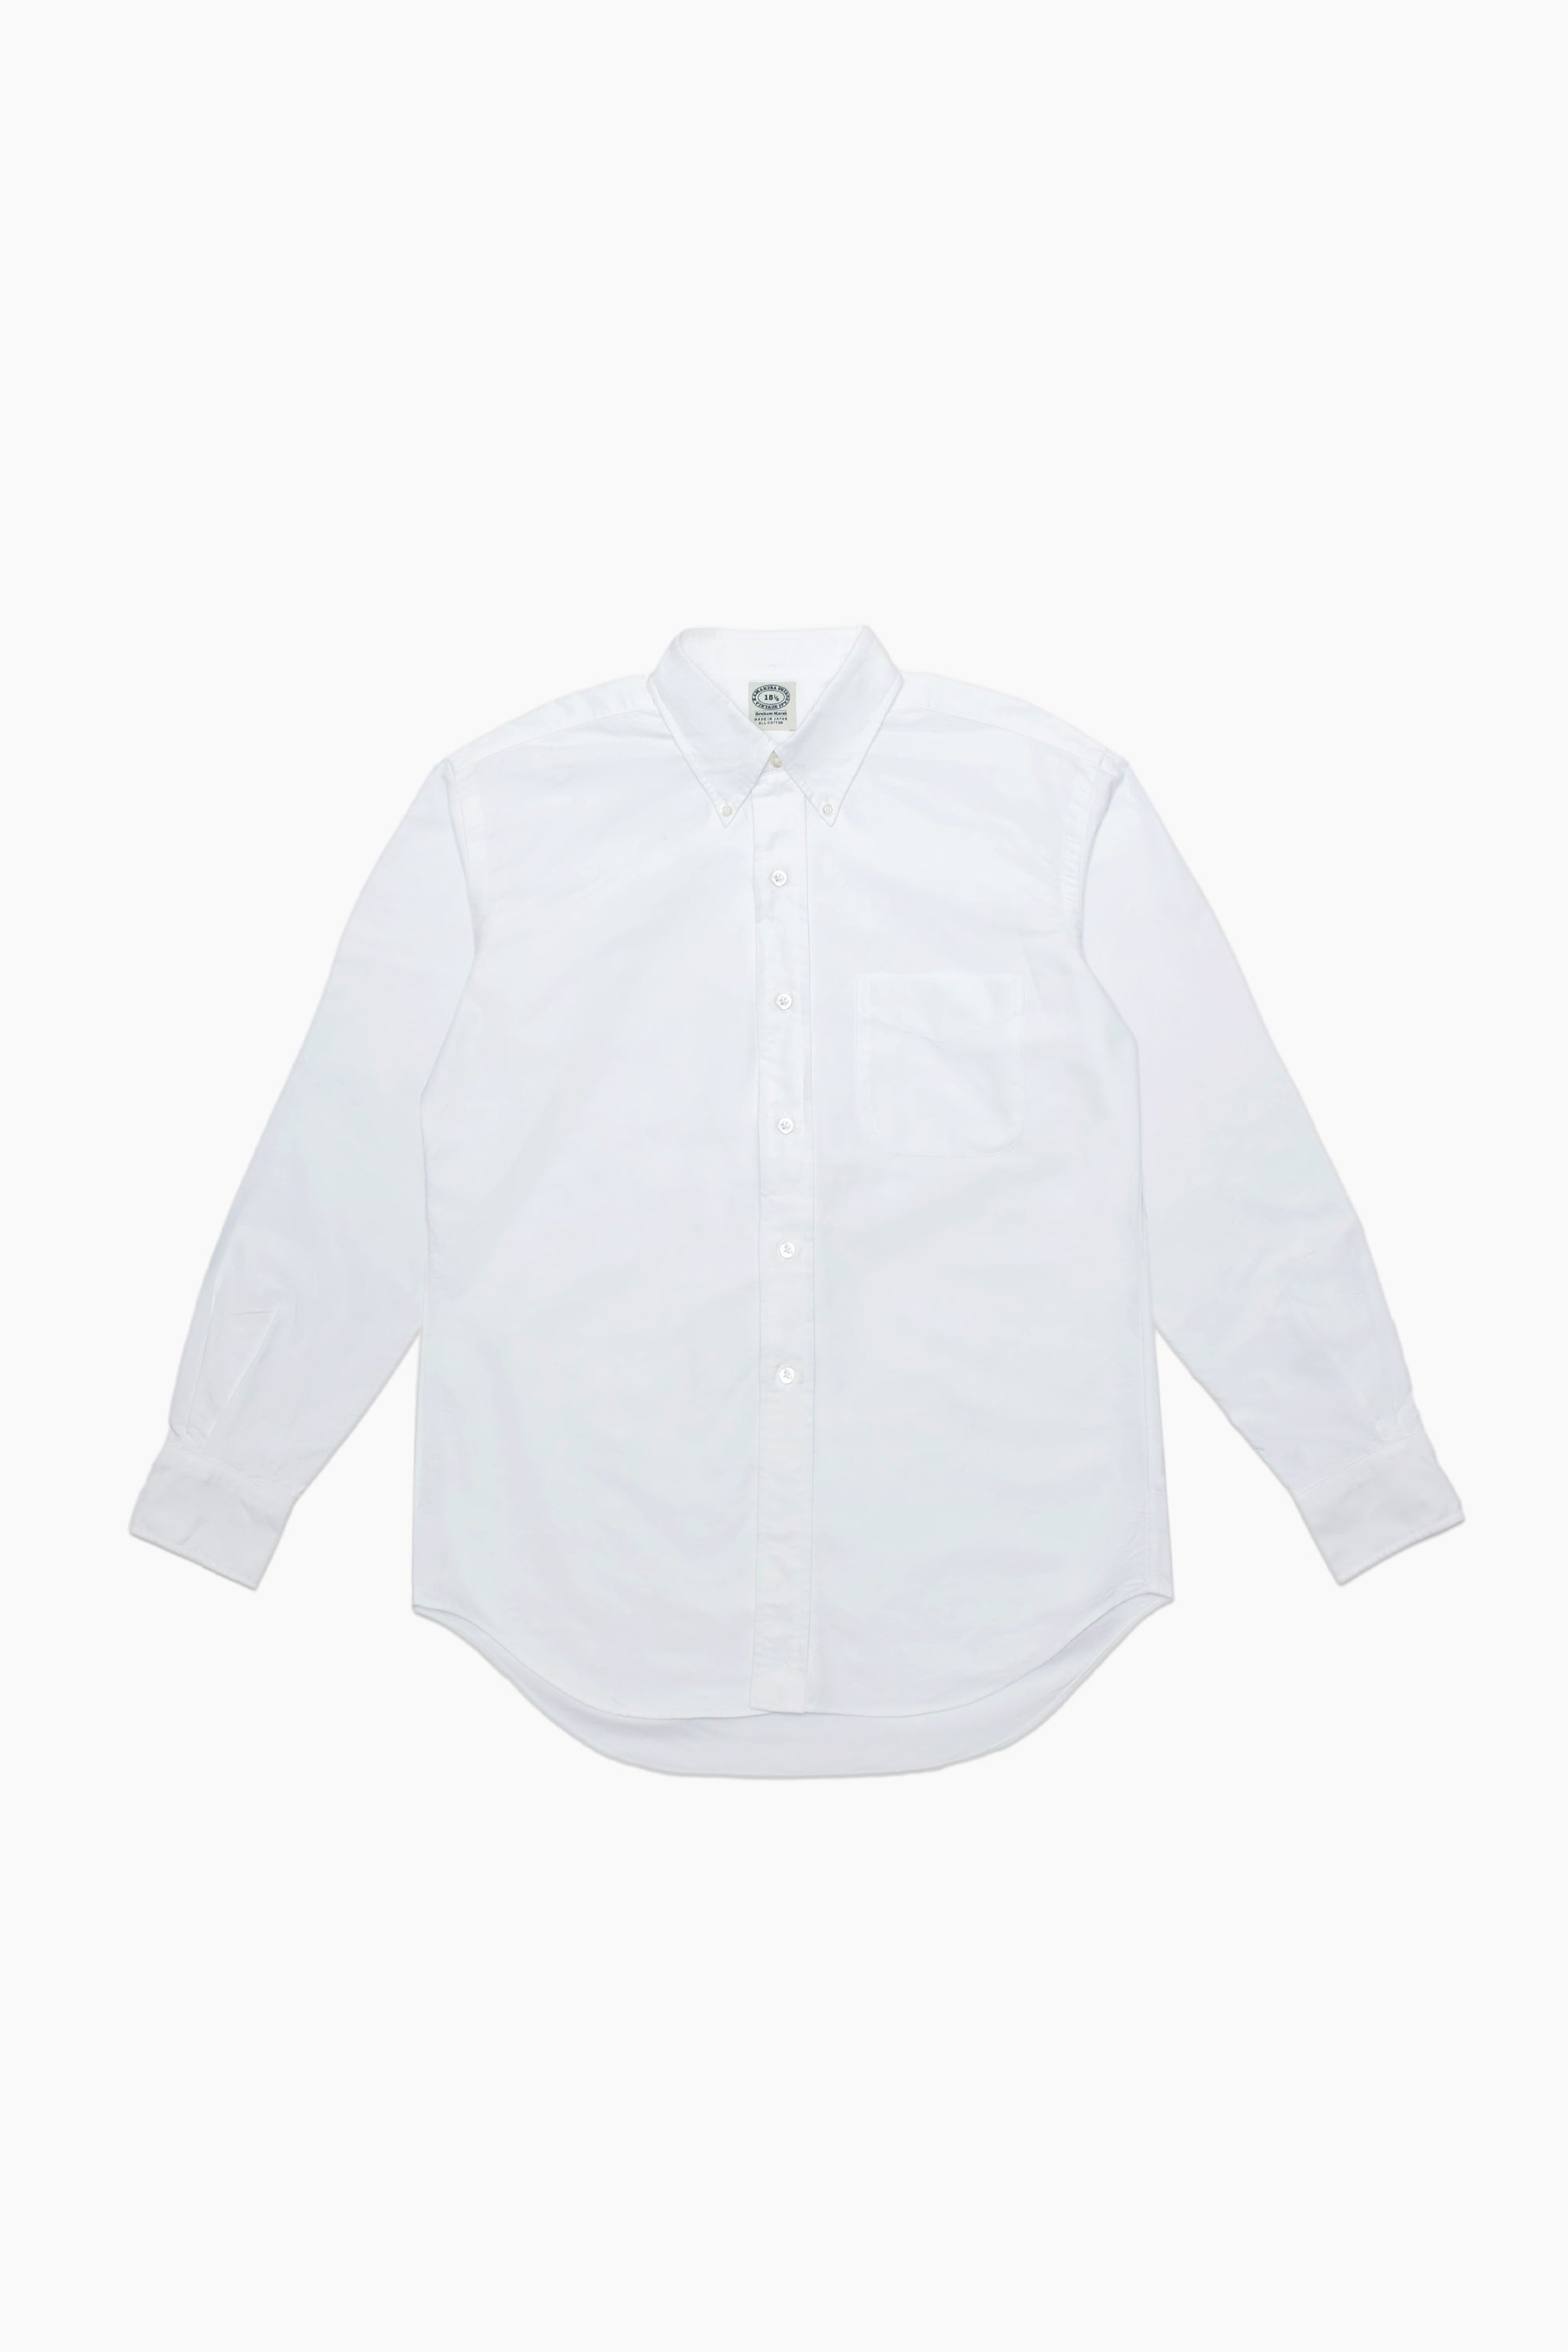 Supreme / White Castle Oxford Shirt White –